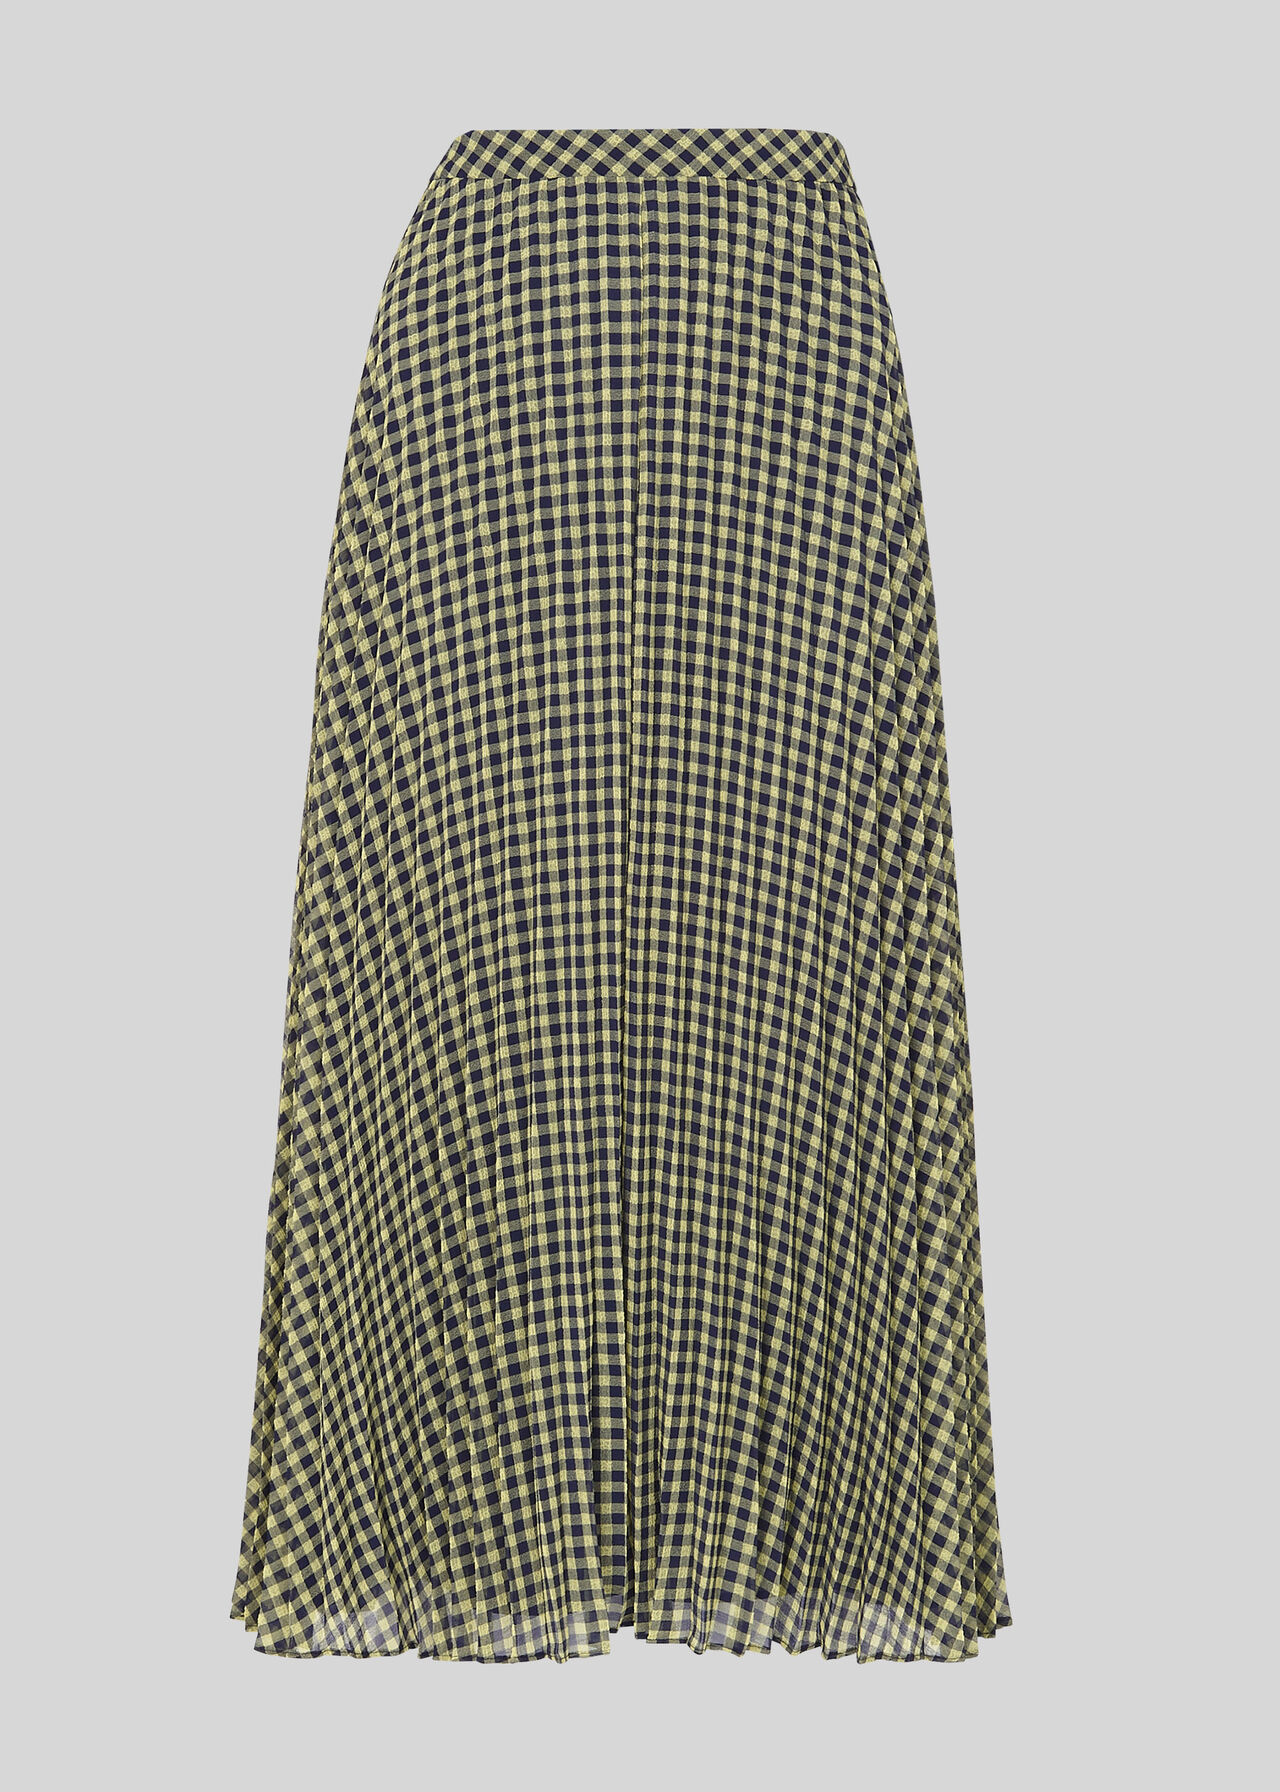 Gingham Pleated Skirt Navy/Multi